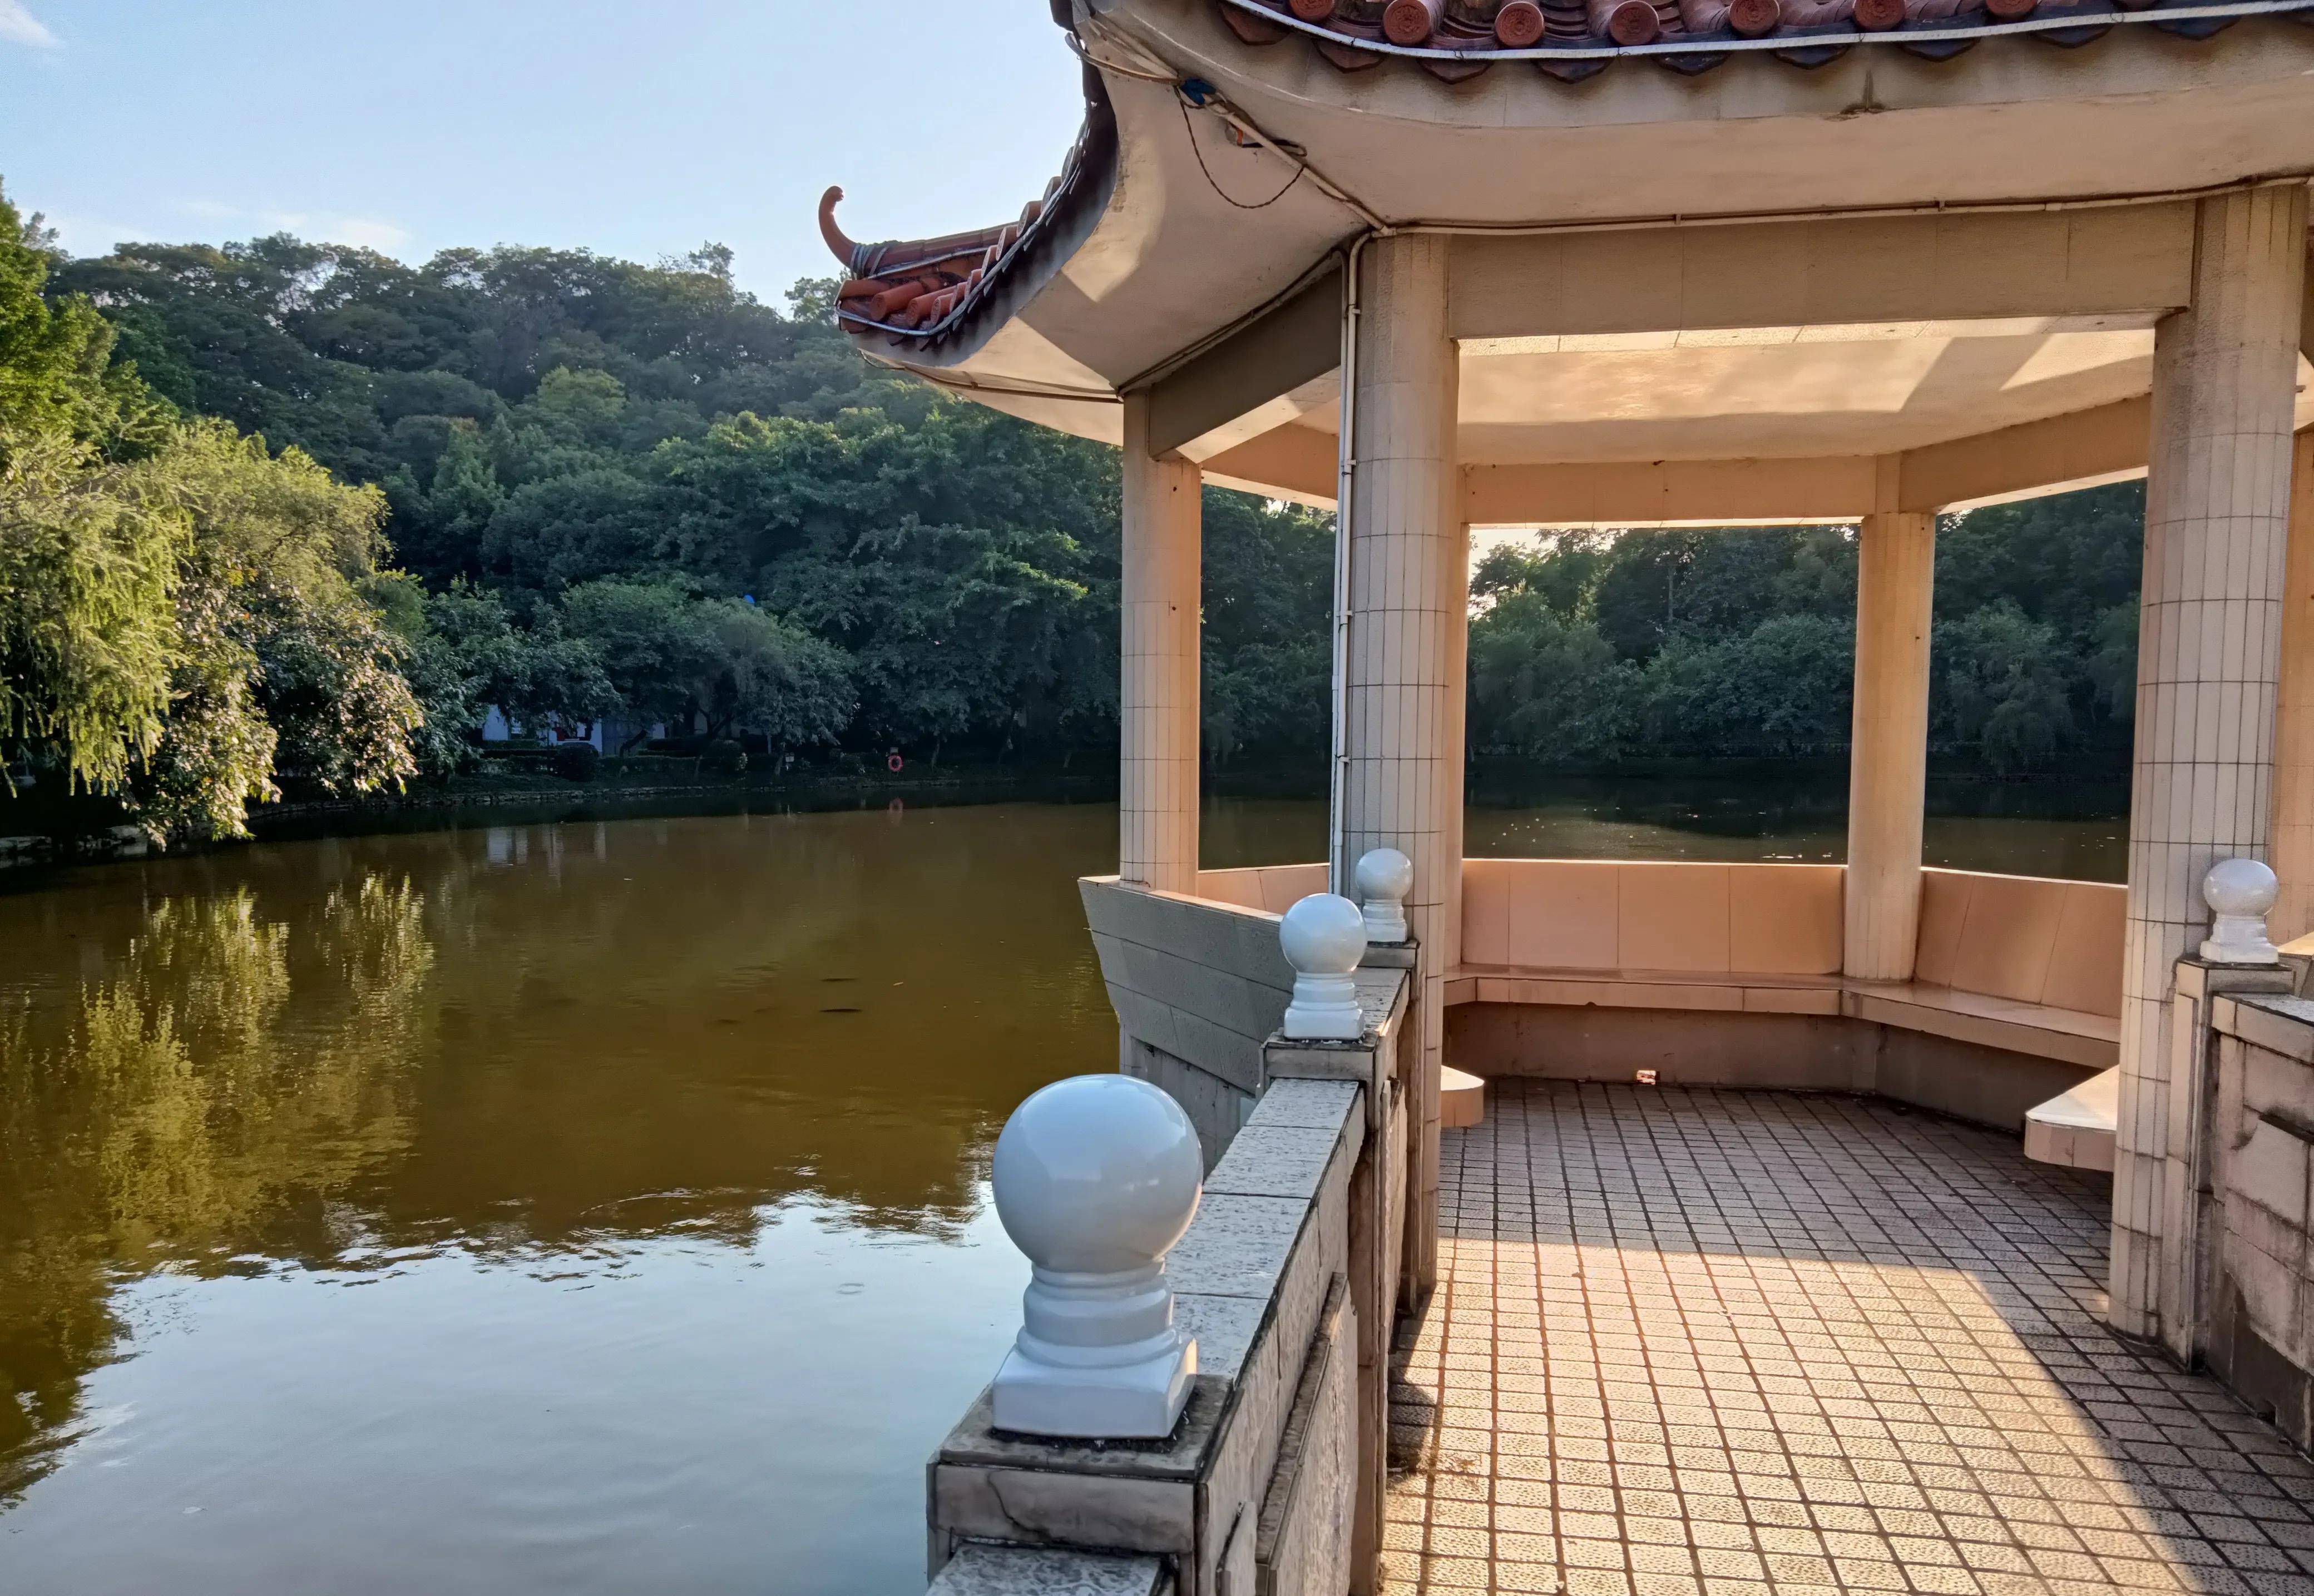 均安翠湖公园景色图片